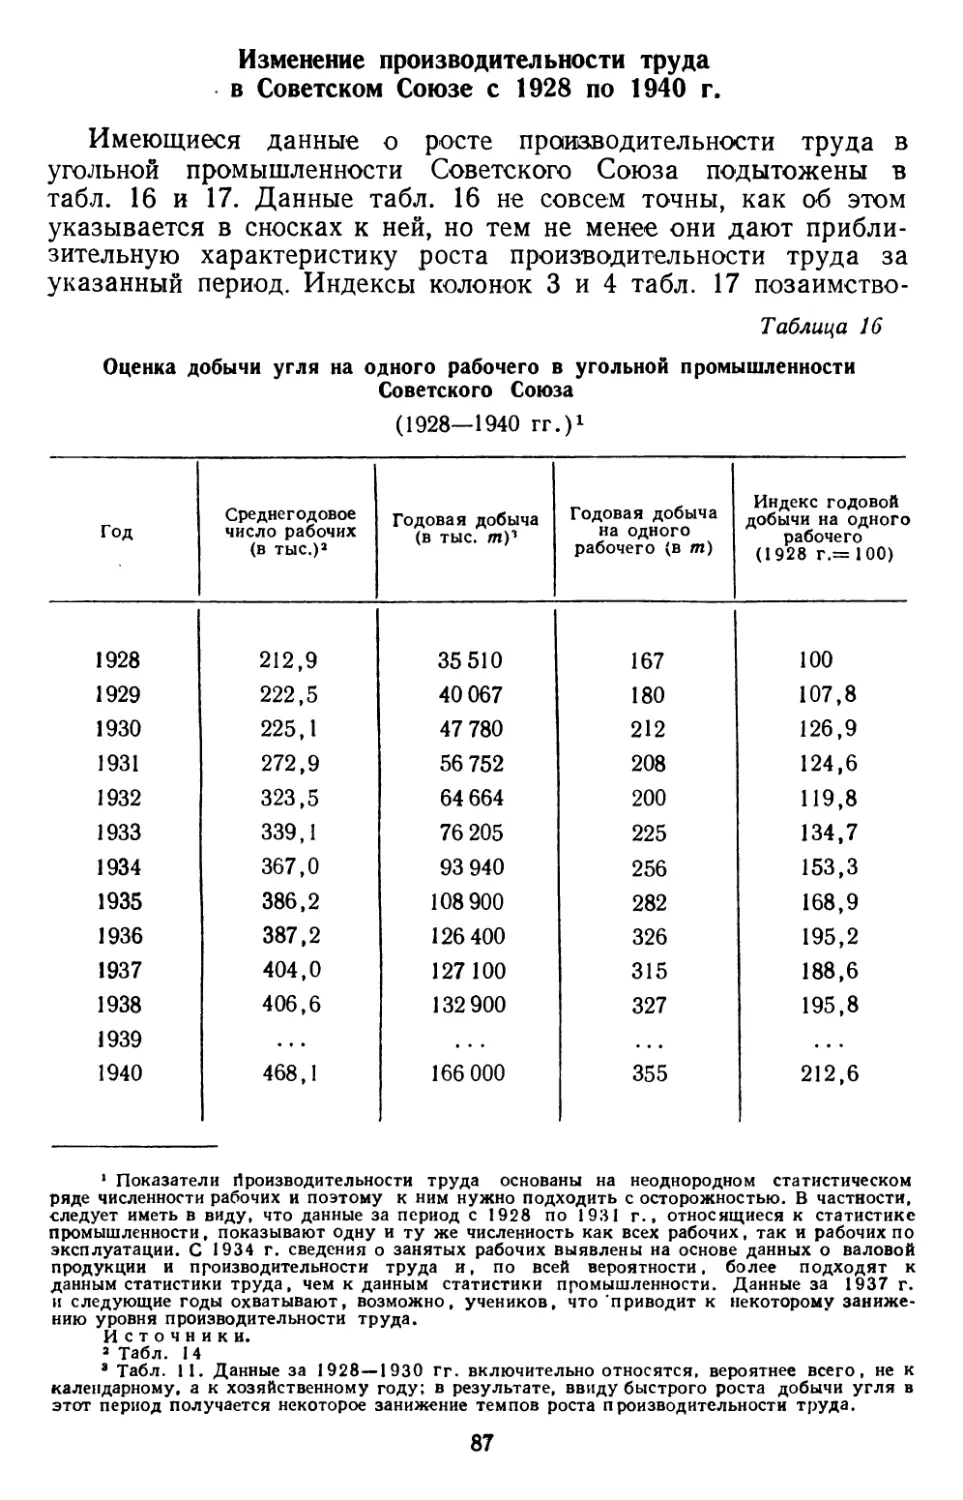 Изменение производительности труда в Советском Союзе с 1928 по 1940 г